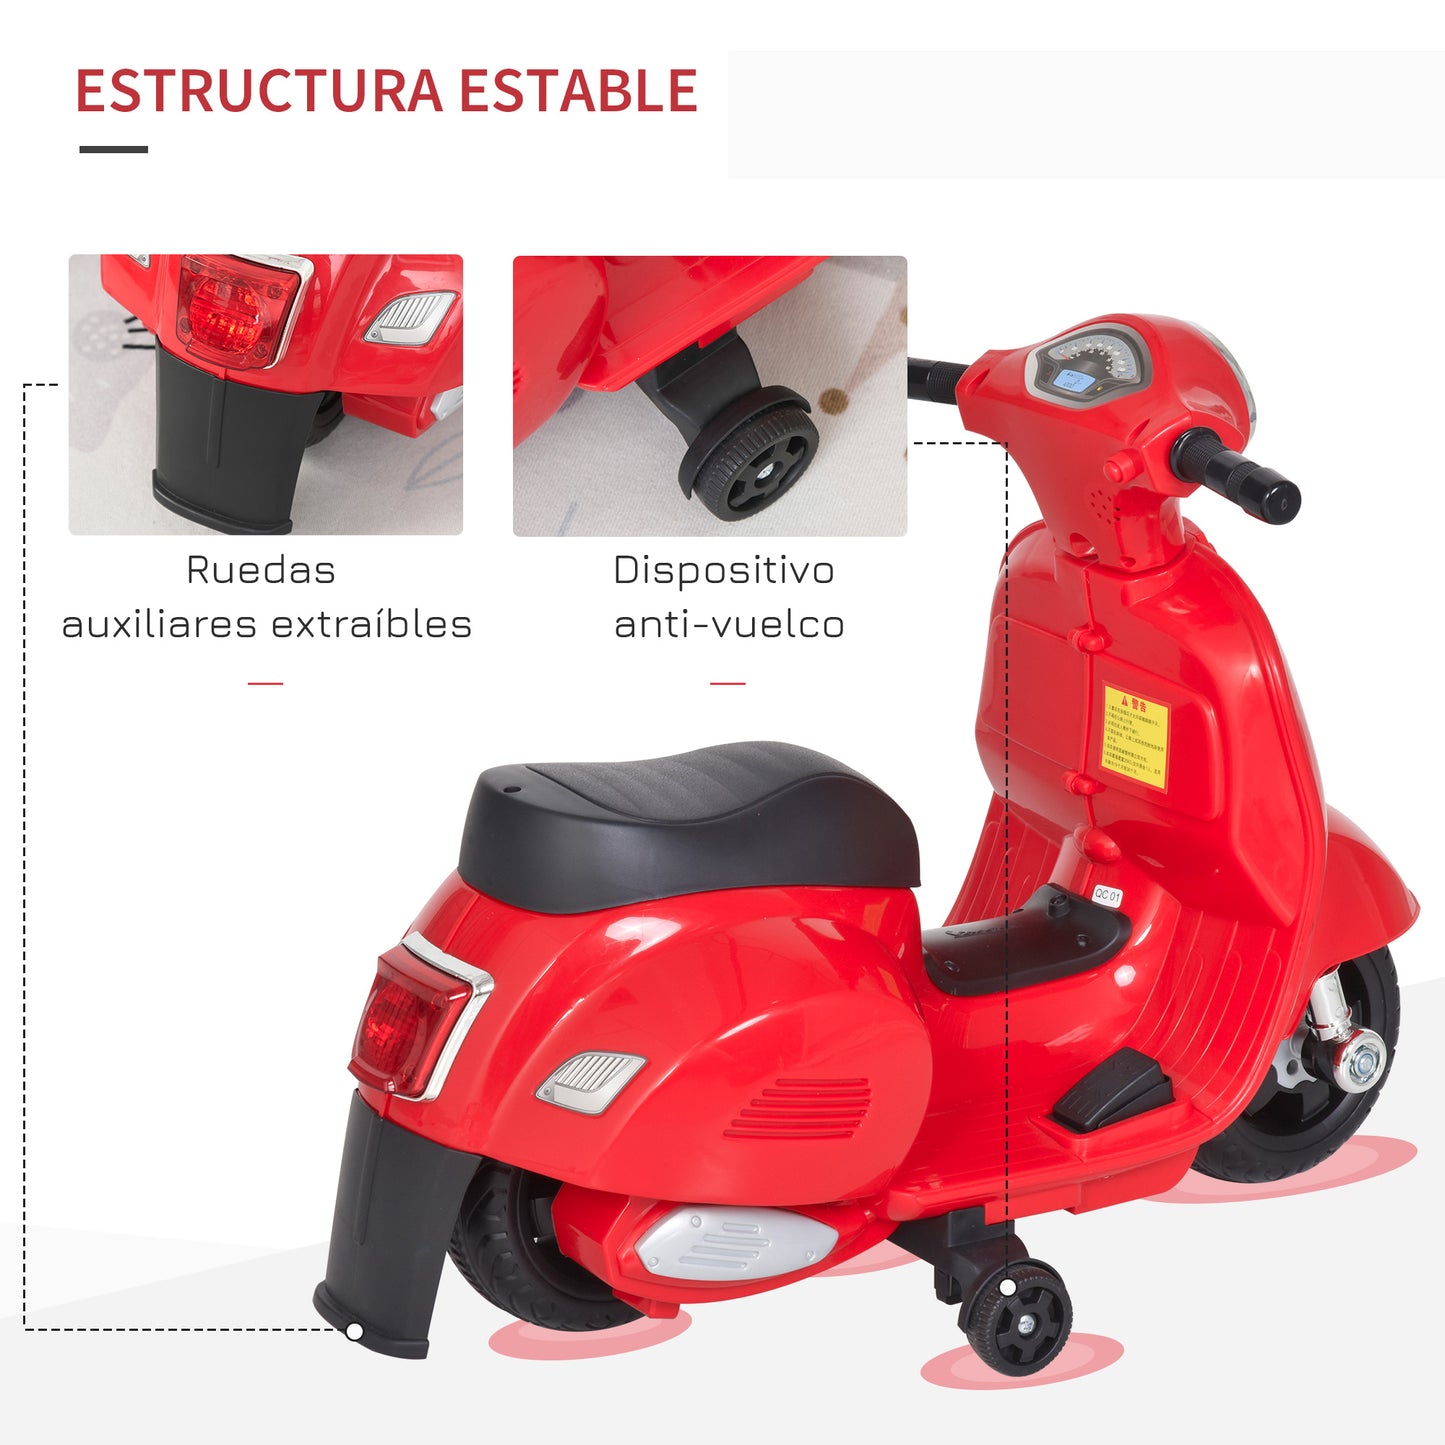 HOMCOM Moto Eléctrica Vespa para Niños de 18-36 Meses Moto de Batería 6V con Faro Bocina y 4 Ruedas Motocicleta Infantil con Licencia 66,5x38x52 cm Rojo